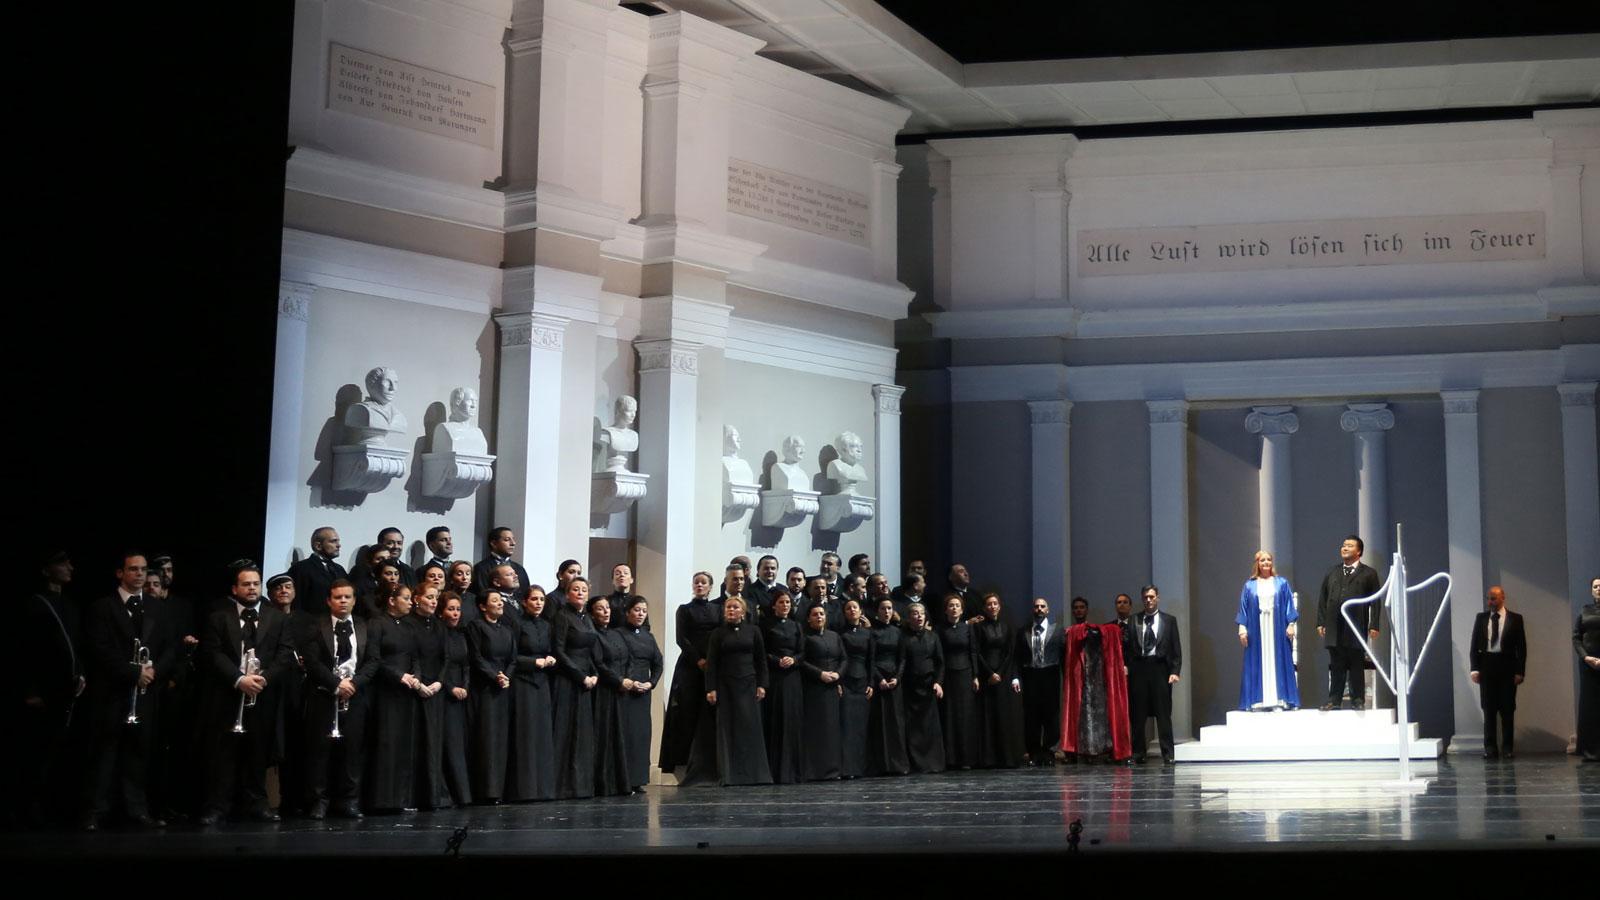 Tannhäuser, la gran ópera romántica de Wagner en Sevilla